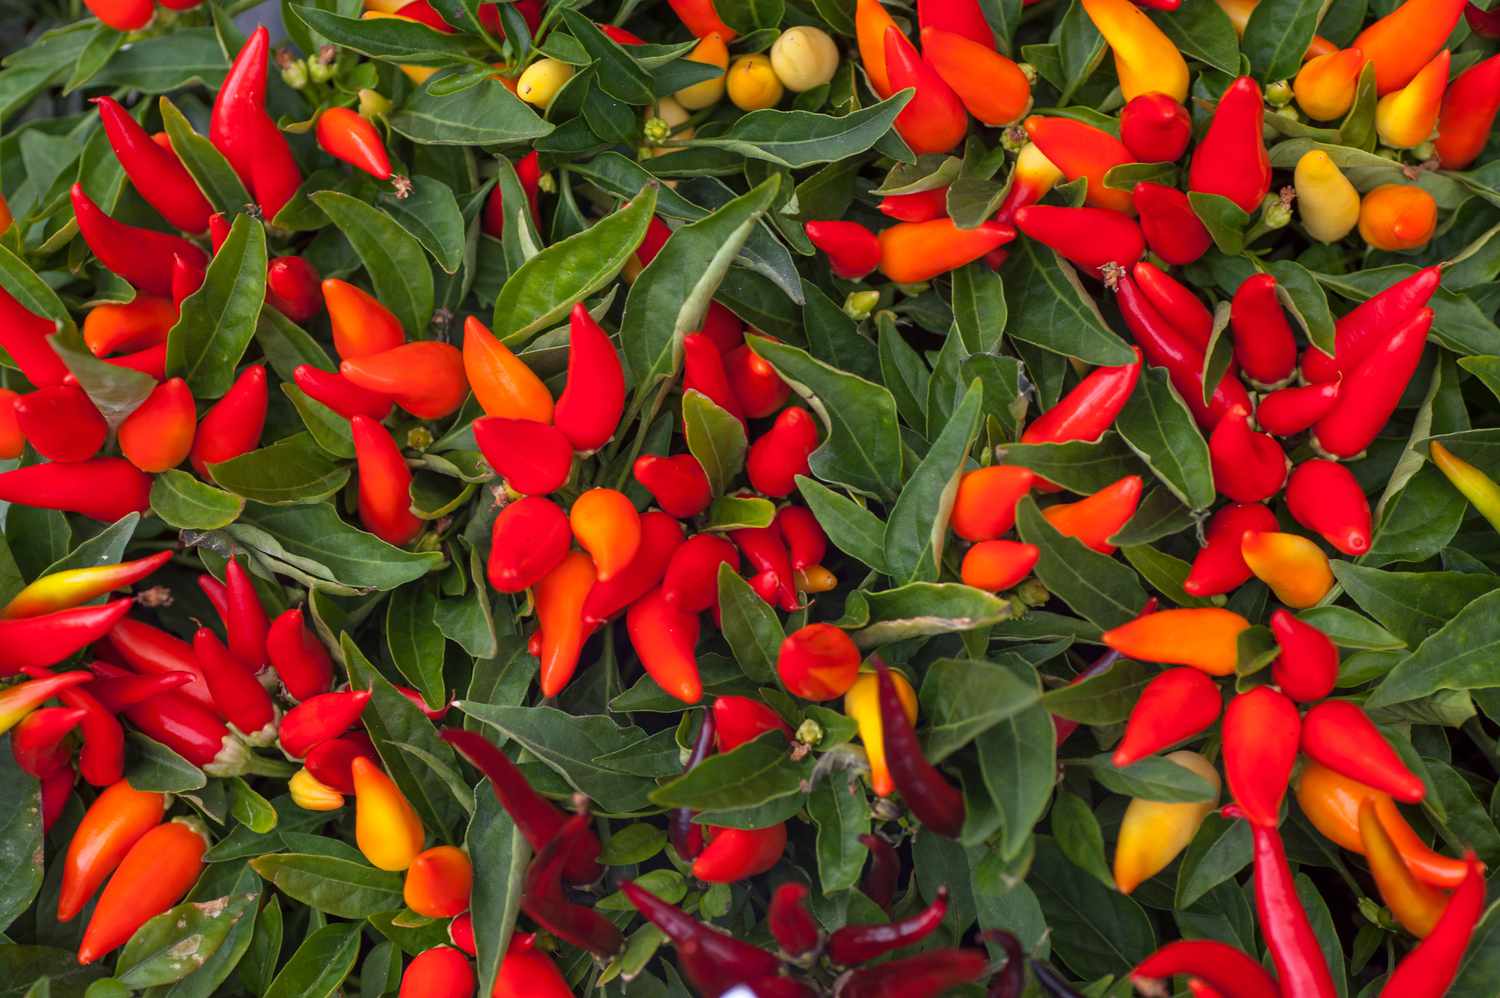 Planta de pimiento ornamental con puntiagudos pimientos rojos y naranjas agrupados entre largas hojas